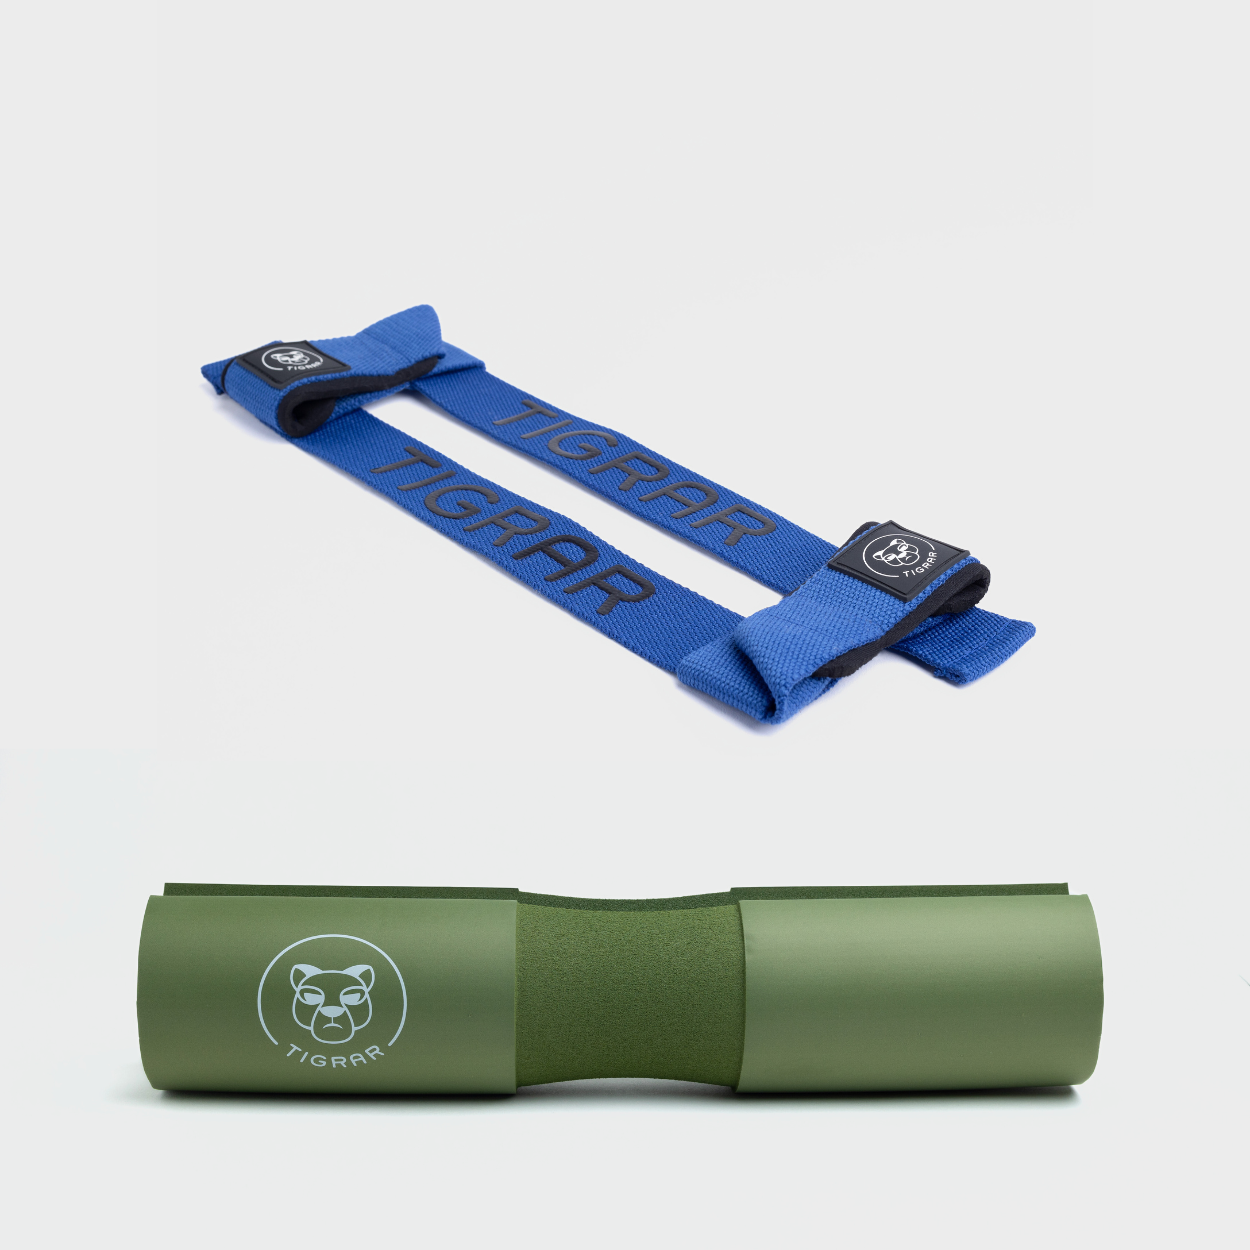 Blauwe lifting straps en groene Tigrar barbell pad, perfect voor veelzijdige krachttraining met duurzaam comfort.